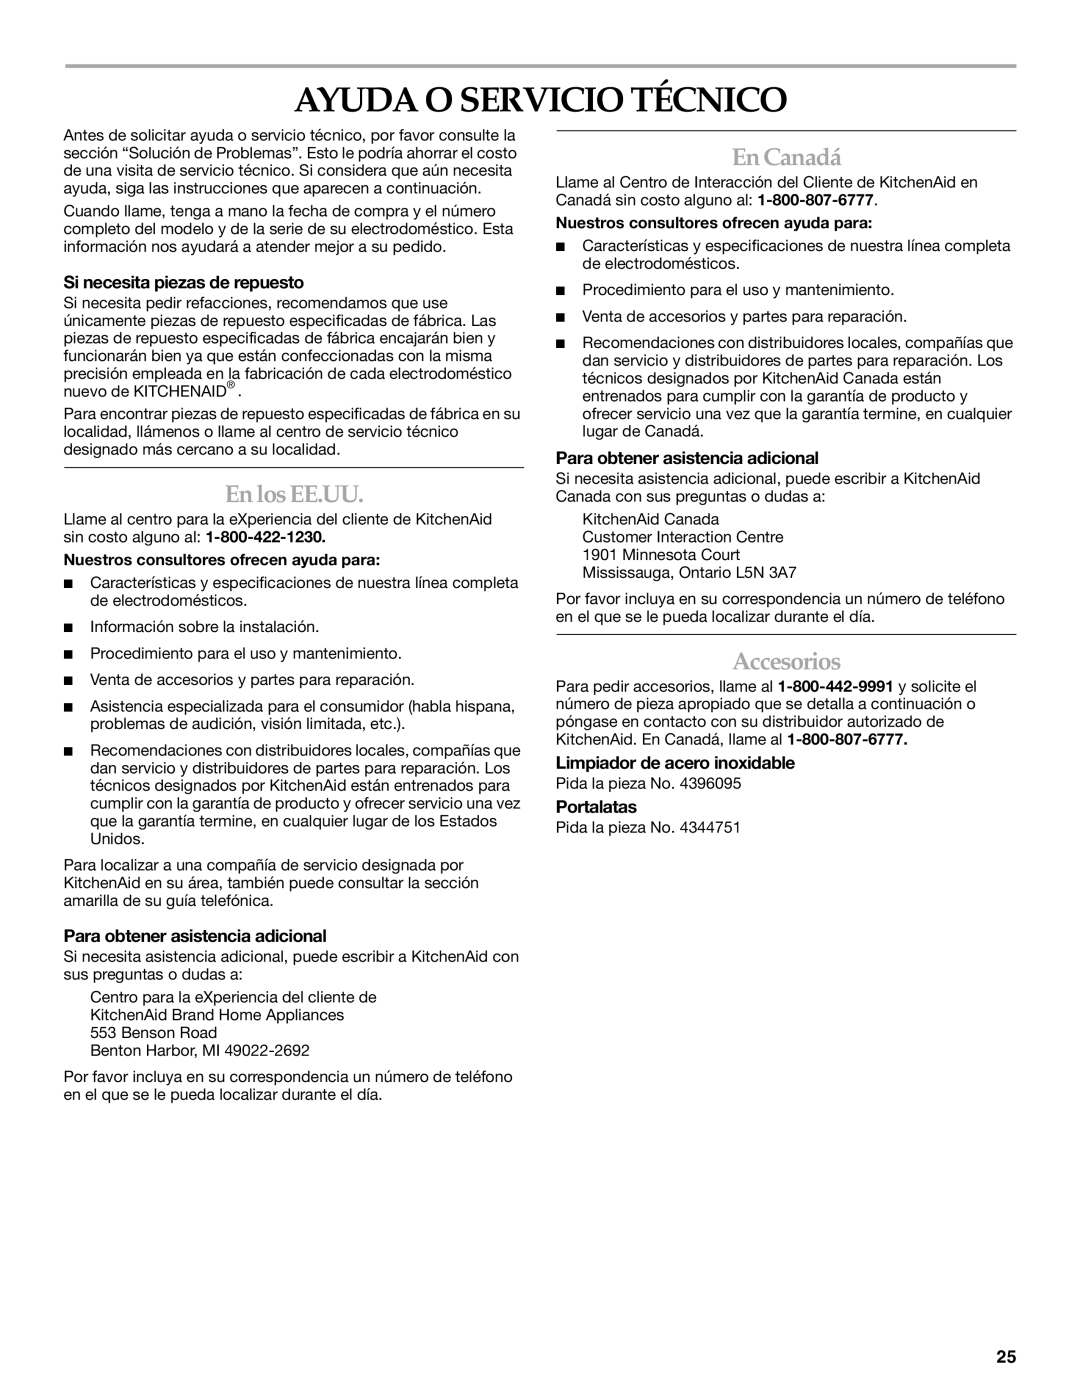 KitchenAid KURO24LSBX manual Ayuda O Servicio Técnico, En Canadá, En los EE.UU, Accesorios 